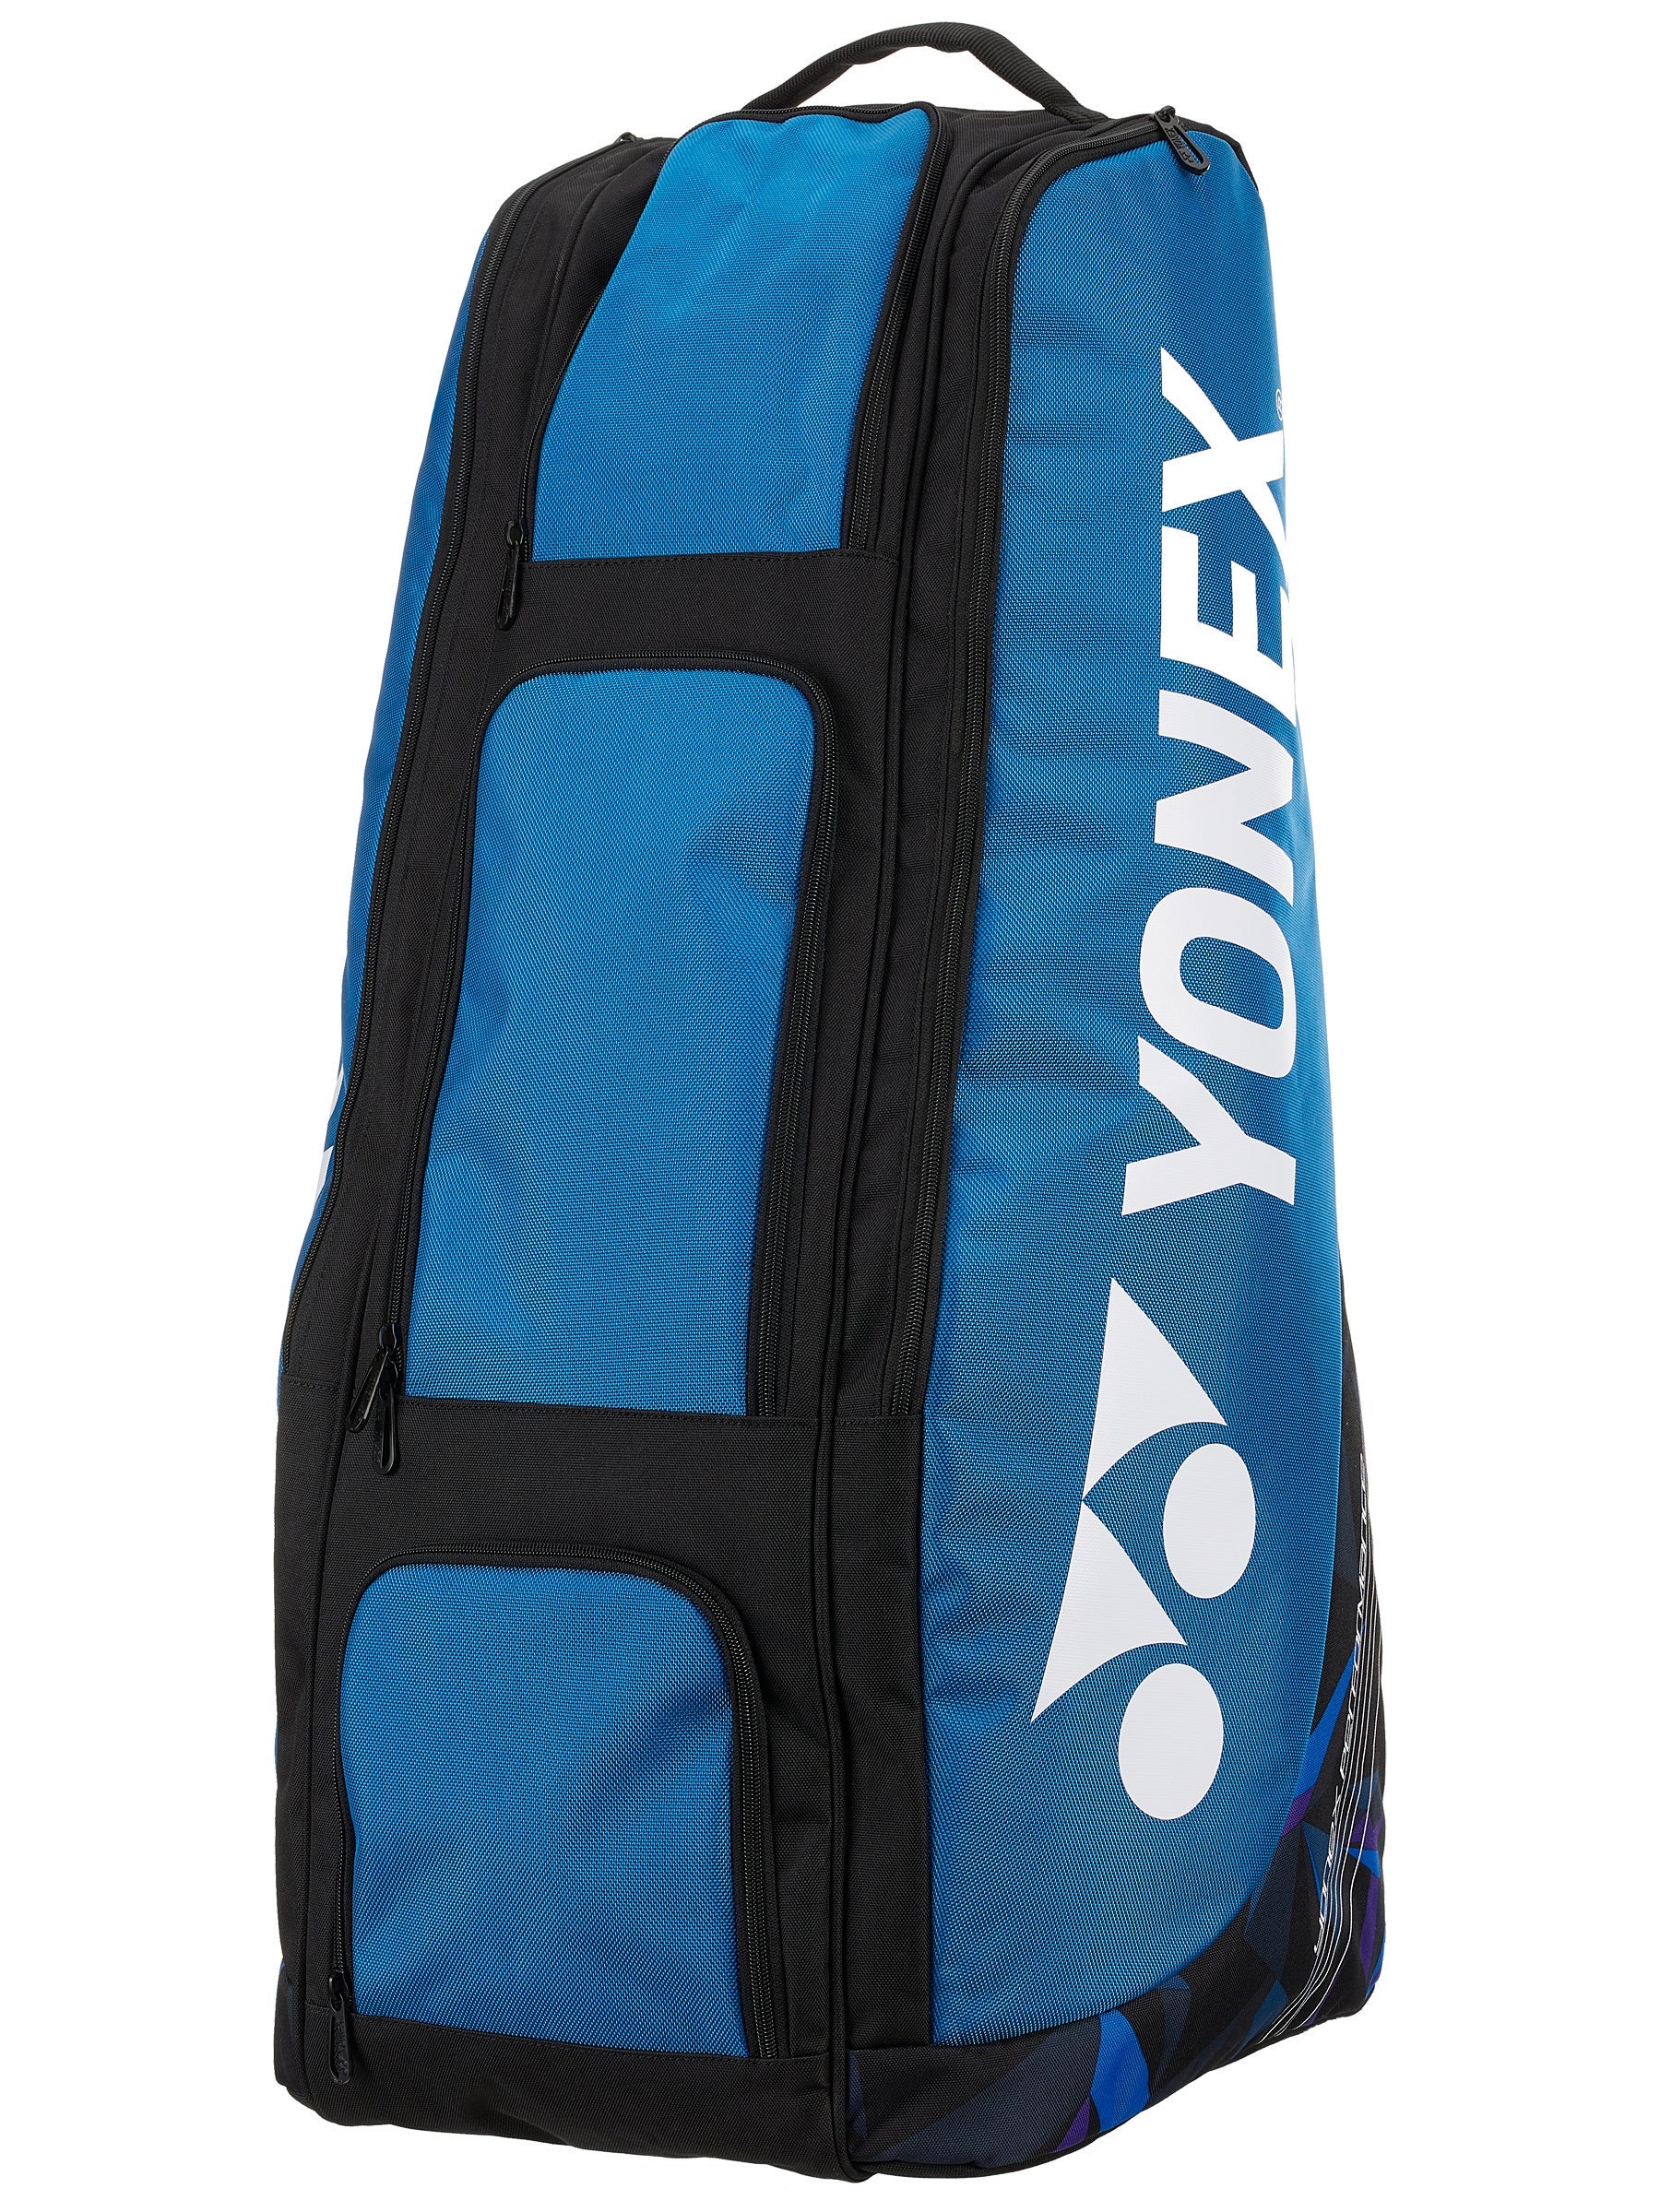 Navy Blue Details about   YONEX  Travel Pouch Large Bag1996LEX Size 34 x 24 x 9 cm 100% Nylon 